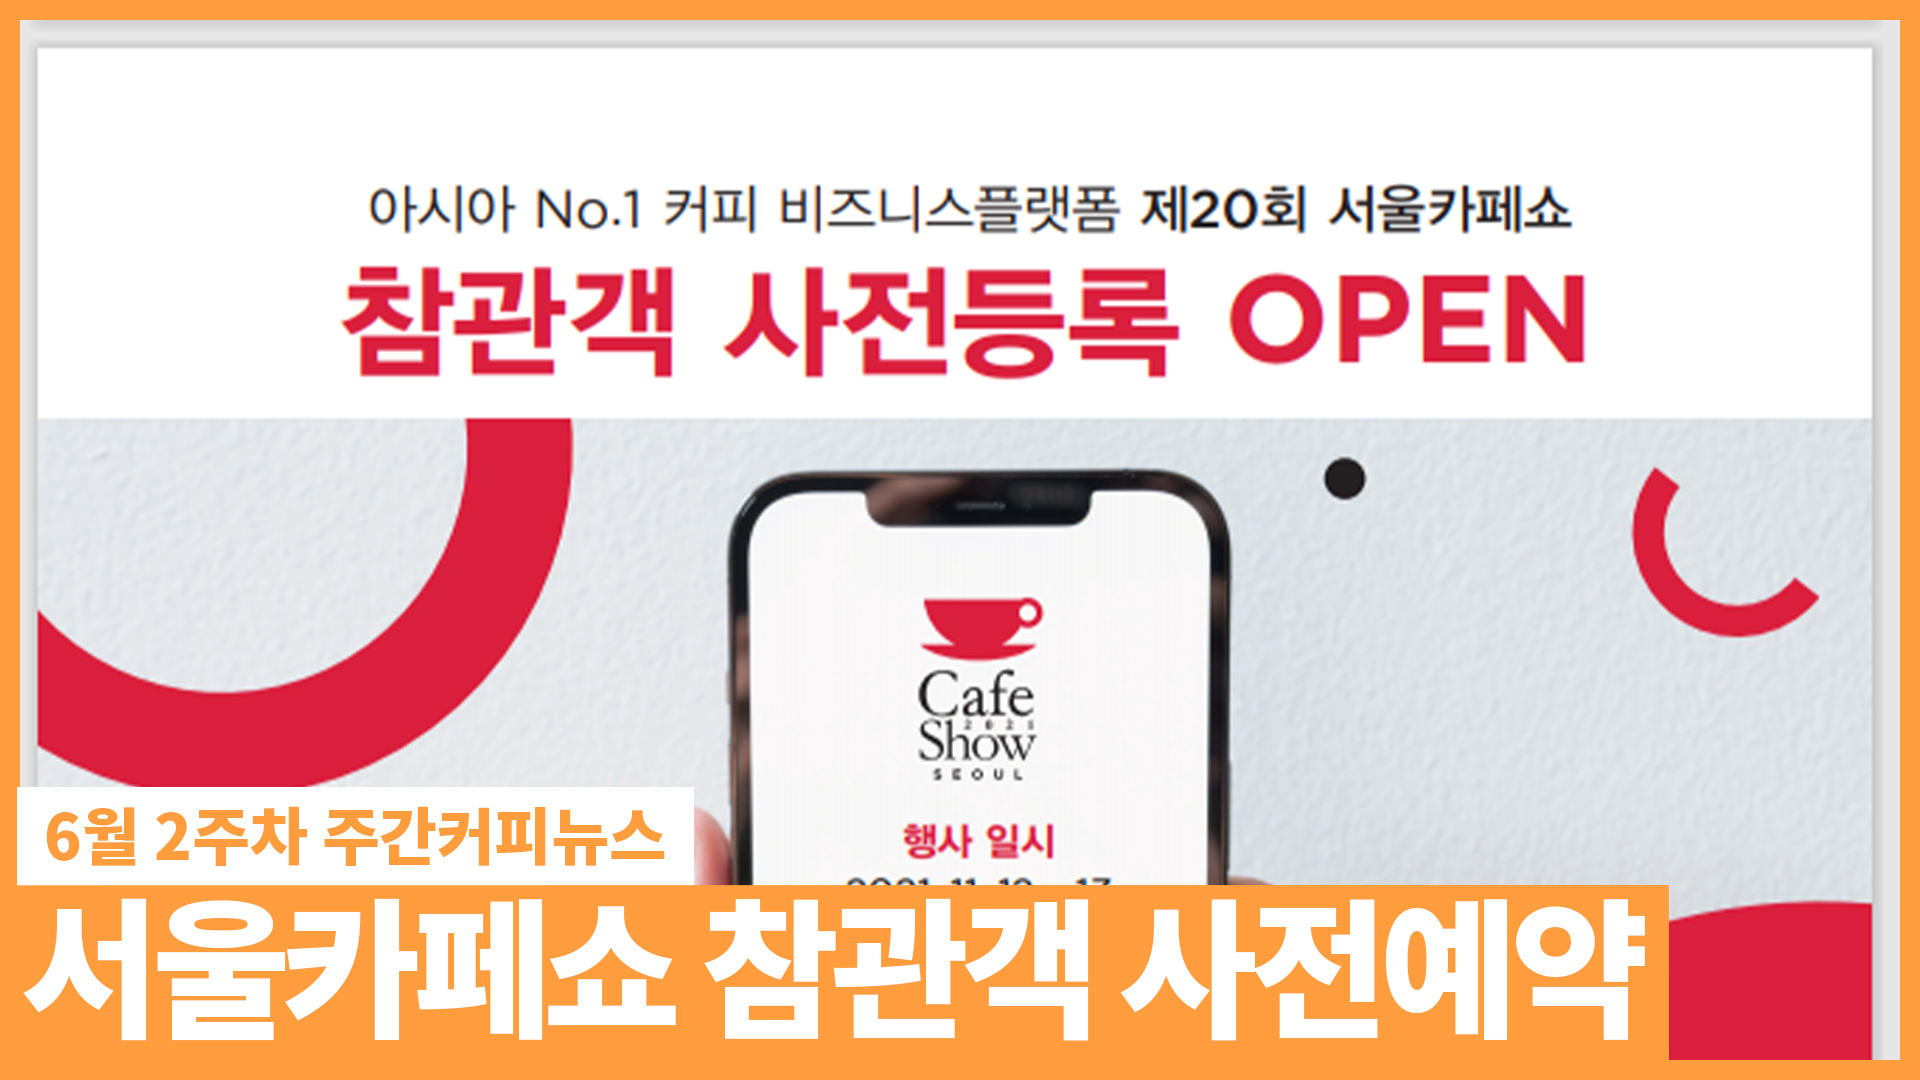 서울카페쇼 참관객 사전예약 오픈! / 6월 2주 주간커피뉴스, 커피TV